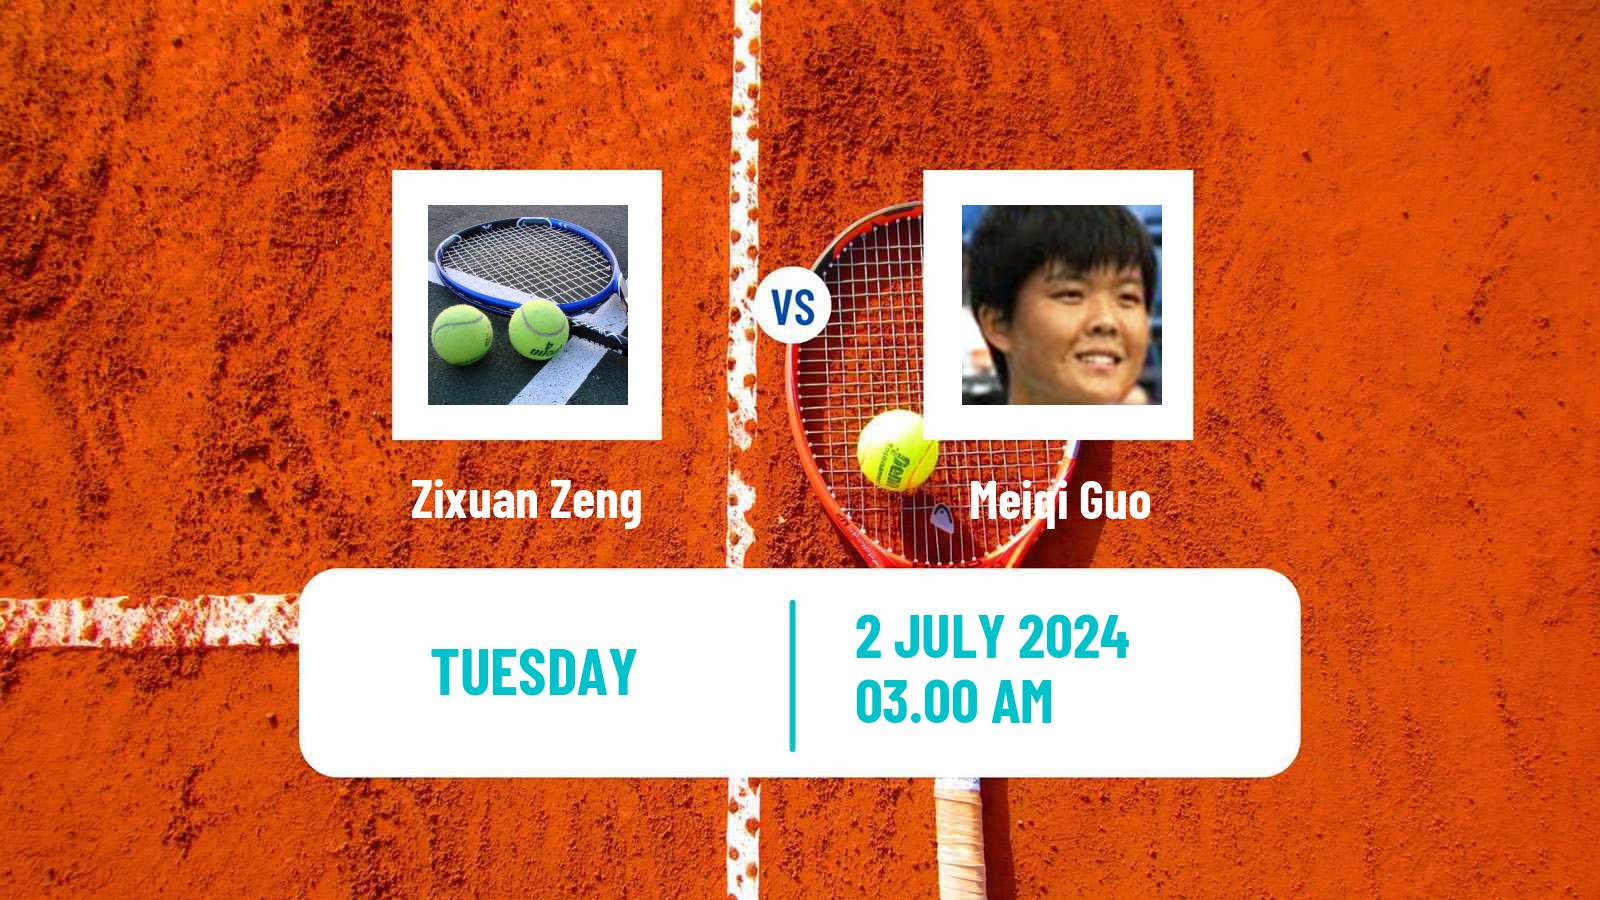 Tennis ITF W15 Tianjin 2 Women Zixuan Zeng - Meiqi Guo